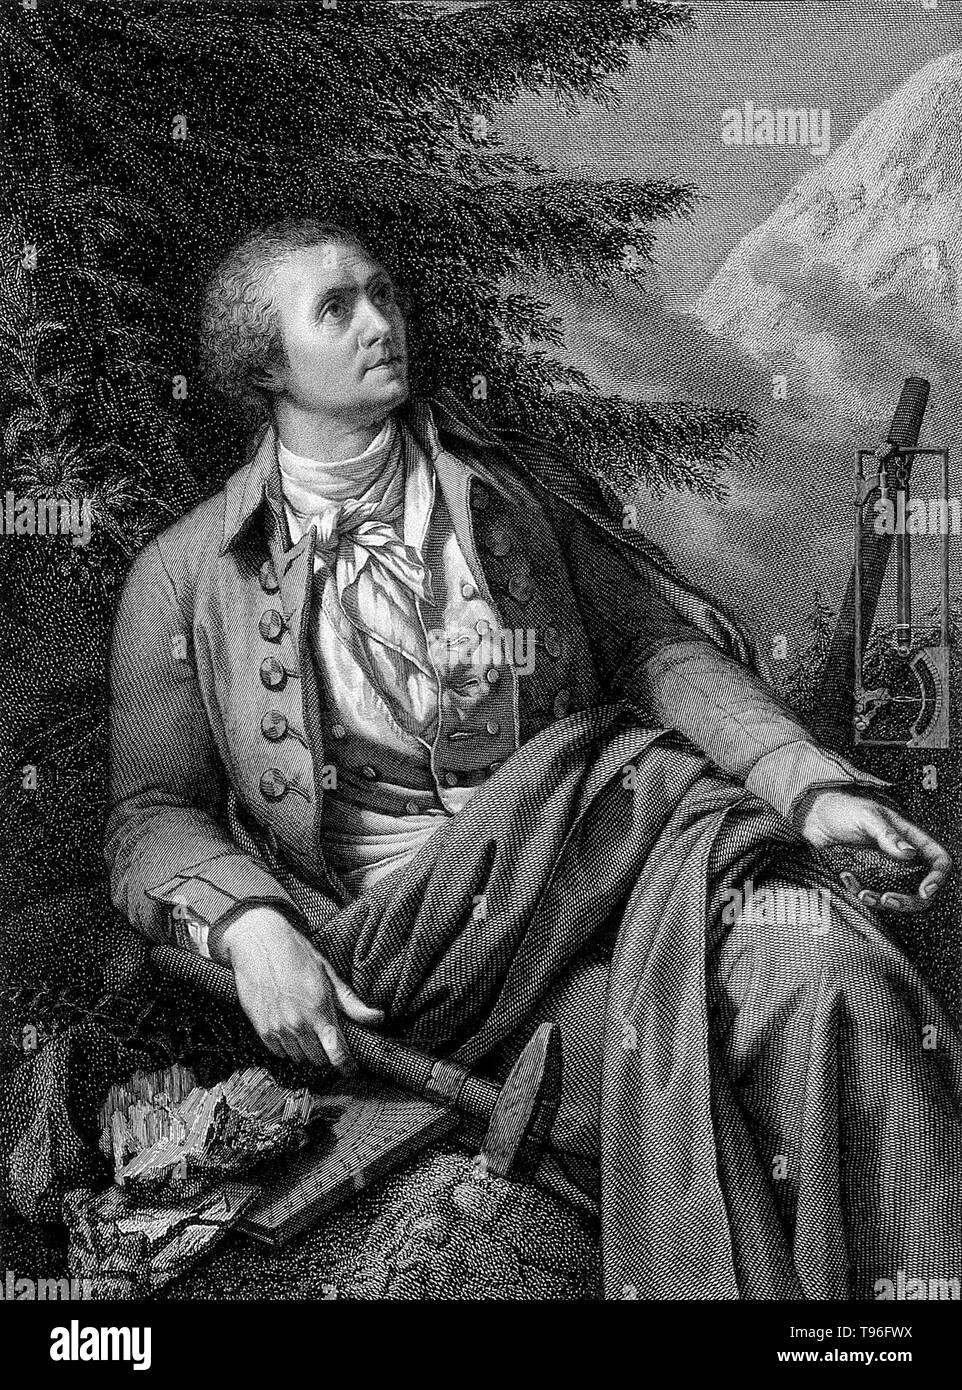 Horace-Bénédict de Saussure (Février 17, 1740 - janvier 22, 1799) était un géologue genevois, météorologue, physicien, alpiniste et explorateur alpin, souvent appelé le fondateur de l'alpinisme et de la météorologie moderne. Il a examiné de près l'inclinaison des strates, la nature des roches, les fossiles et les minéraux des Alpes. Banque D'Images